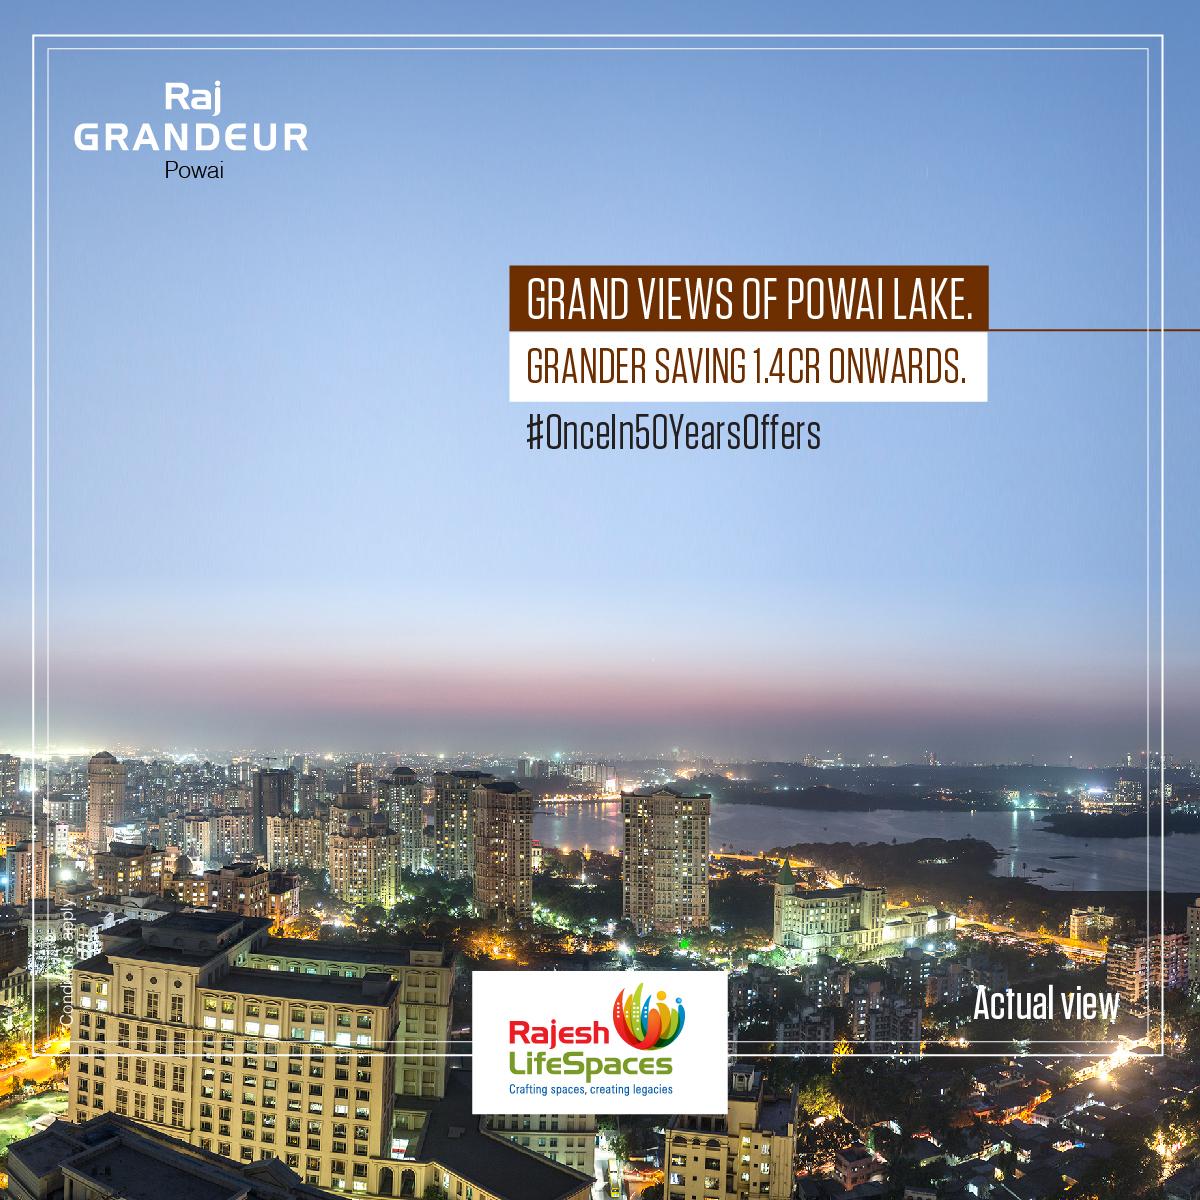 Grand Views of Powai Lake Grander Saving 1.4 Cr. Onwards at Raj Grandeur, Powai, Mumbai Update